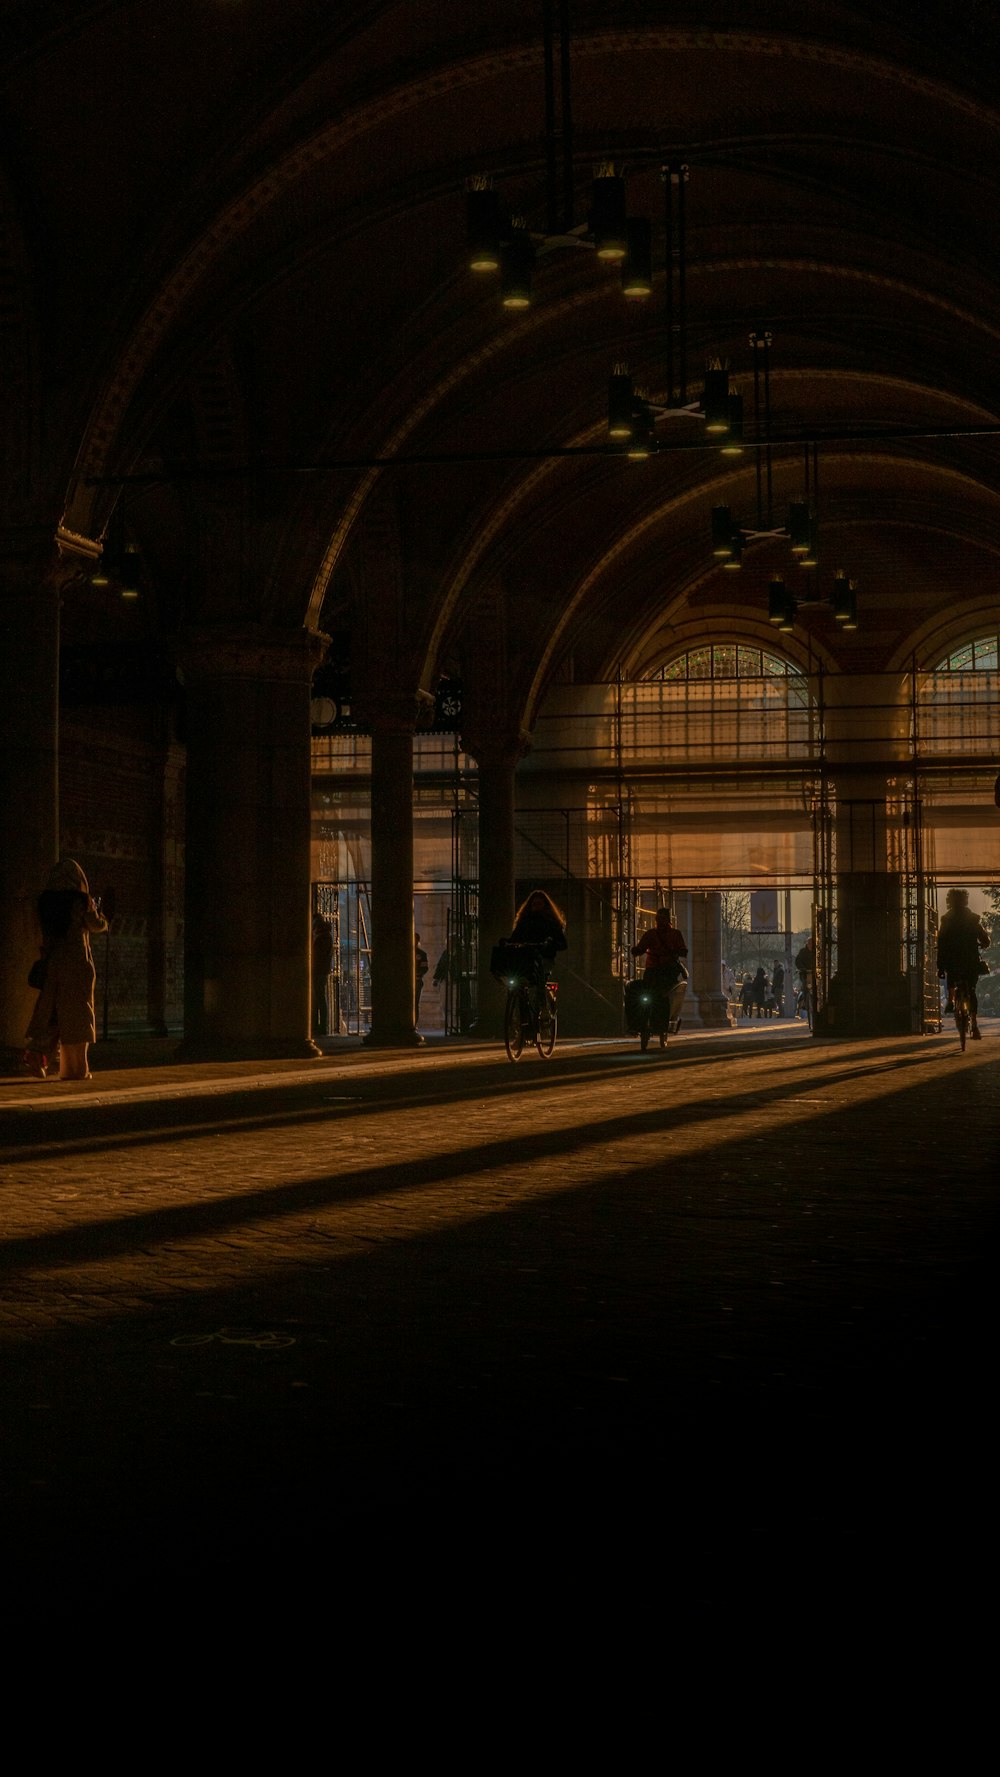 un groupe de personnes marchant dans une gare